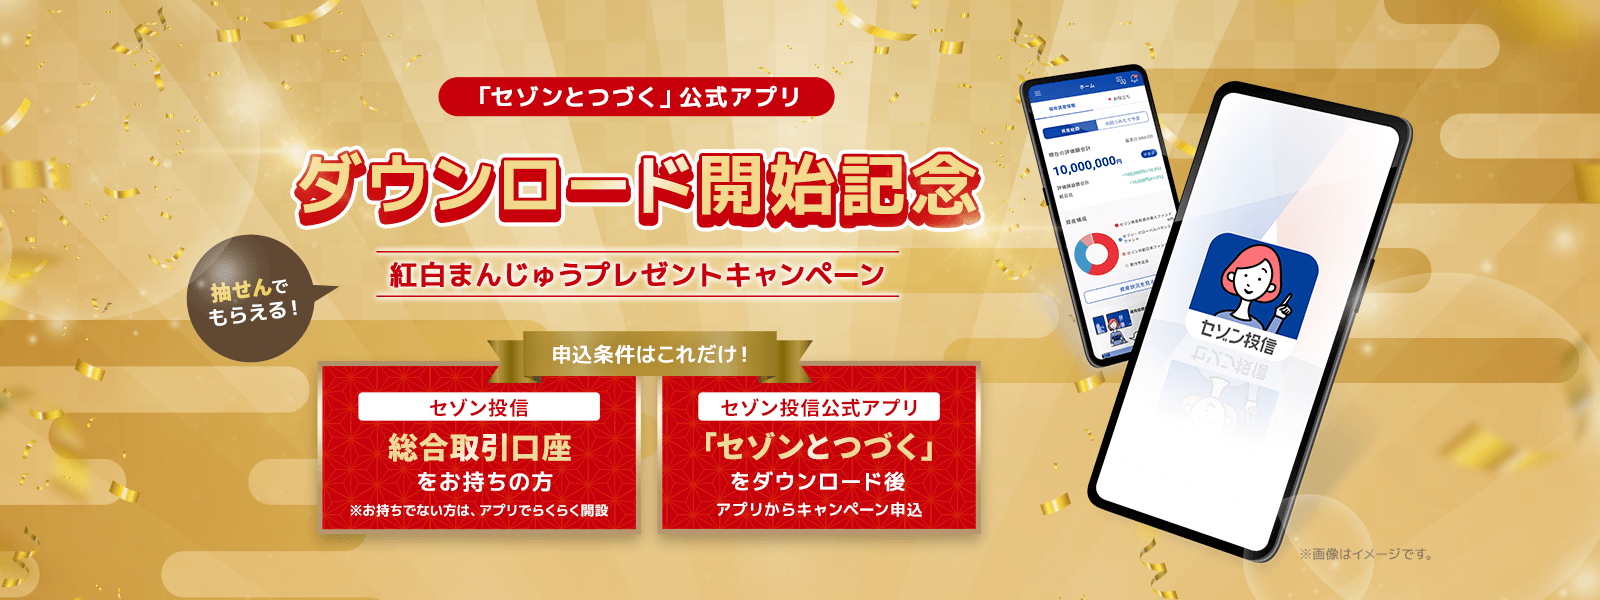 「セゾンとつづく」公式アプリ ダウンロード開始記念 紅白まんじゅうプレゼントキャンペーン